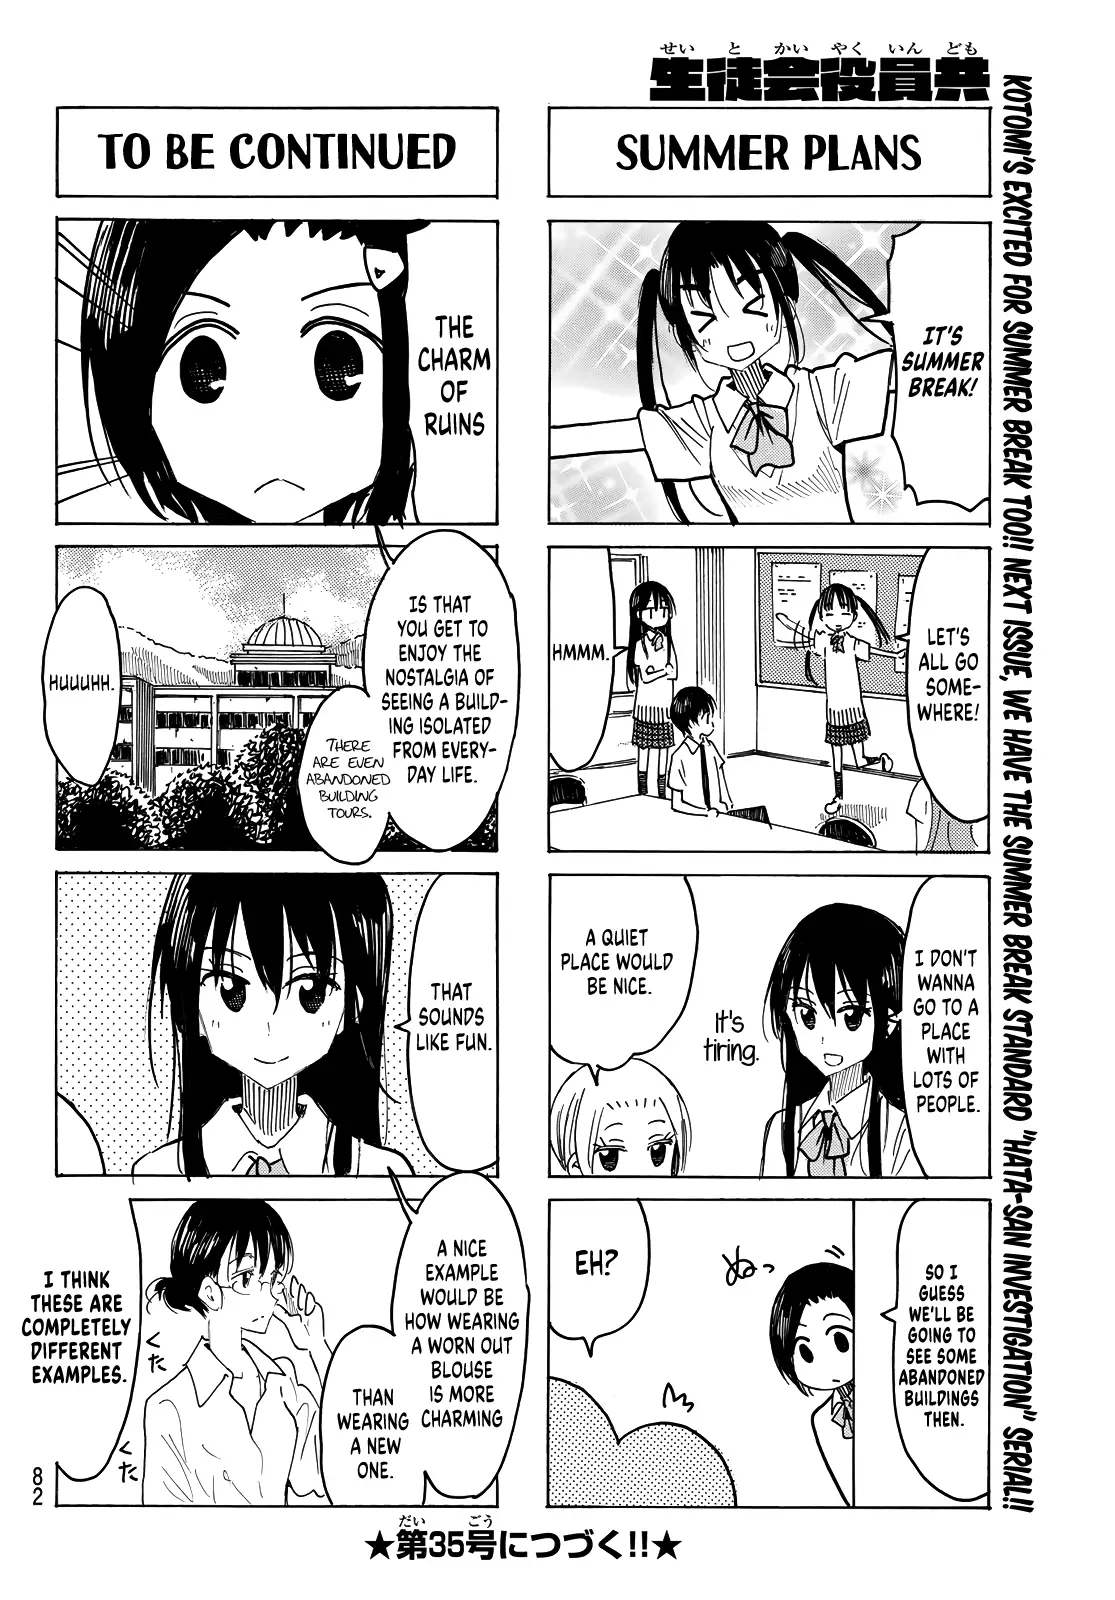 Seitokai Yakuindomo - 625 page 4